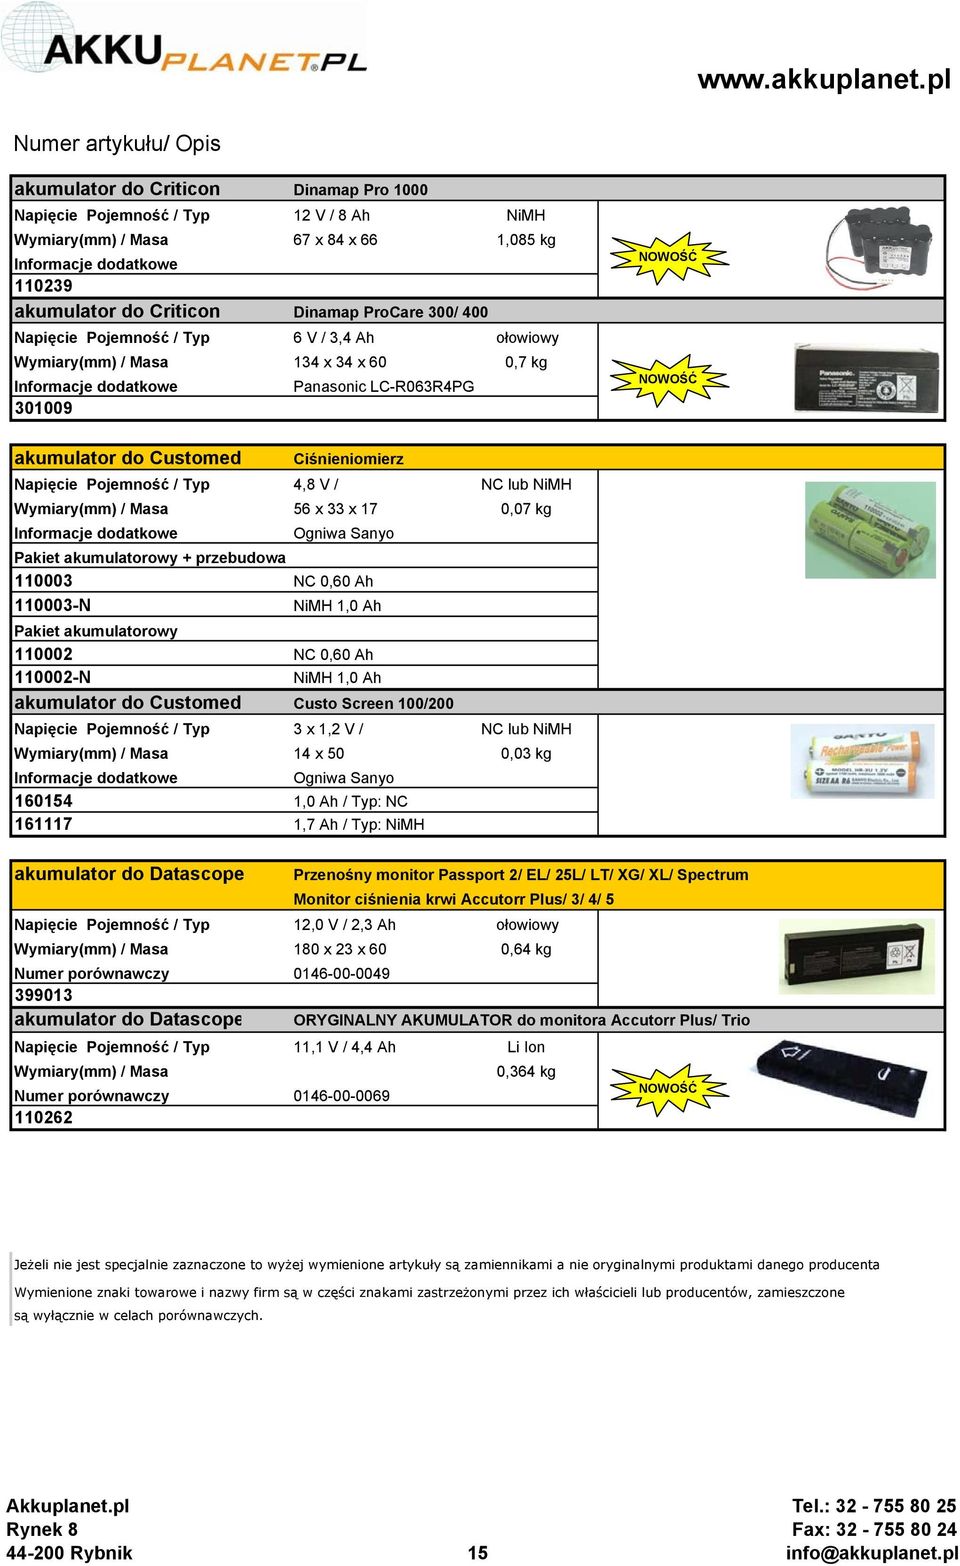 przebudowa 110003 NC 0,60 Ah 110003-N NiMH 1,0 Ah Pakiet akumulatorowy 110002 NC 0,60 Ah 110002-N NiMH 1,0 Ah akumulator do Customed Custo Screen 100/200 Napięcie Pojemność / Typ 3 x 1,2 V / NC lub